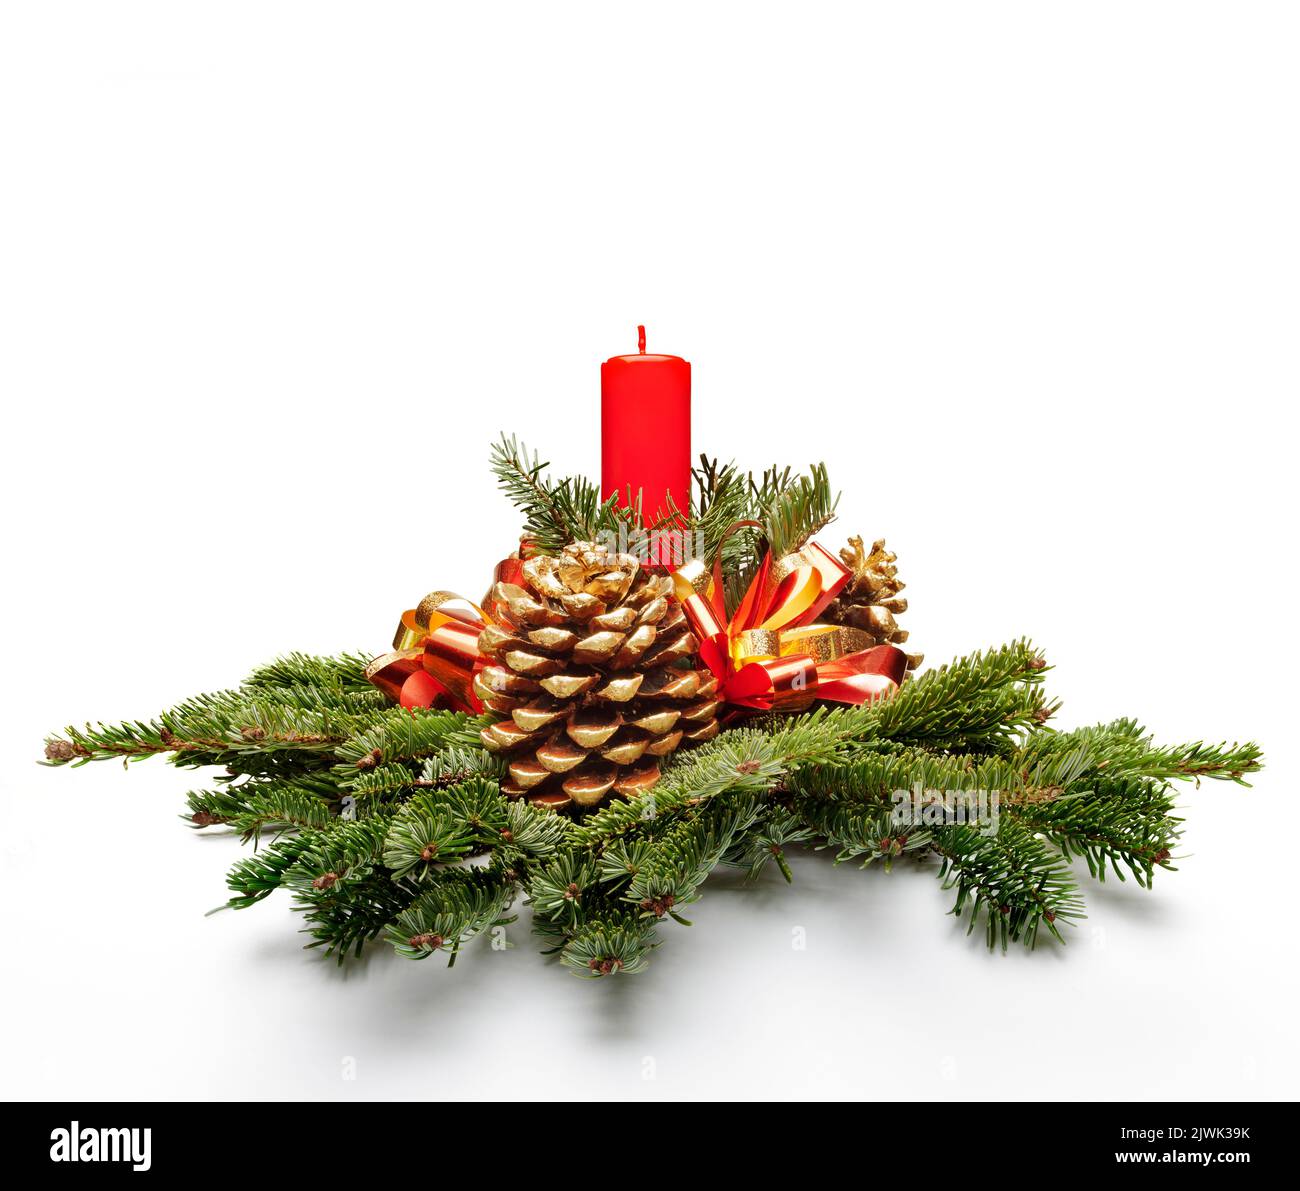 Weihnachten Mittelstück Dekoration mit einem roten Farbe Kerze und Tannenbaum verlässt. Stockfoto